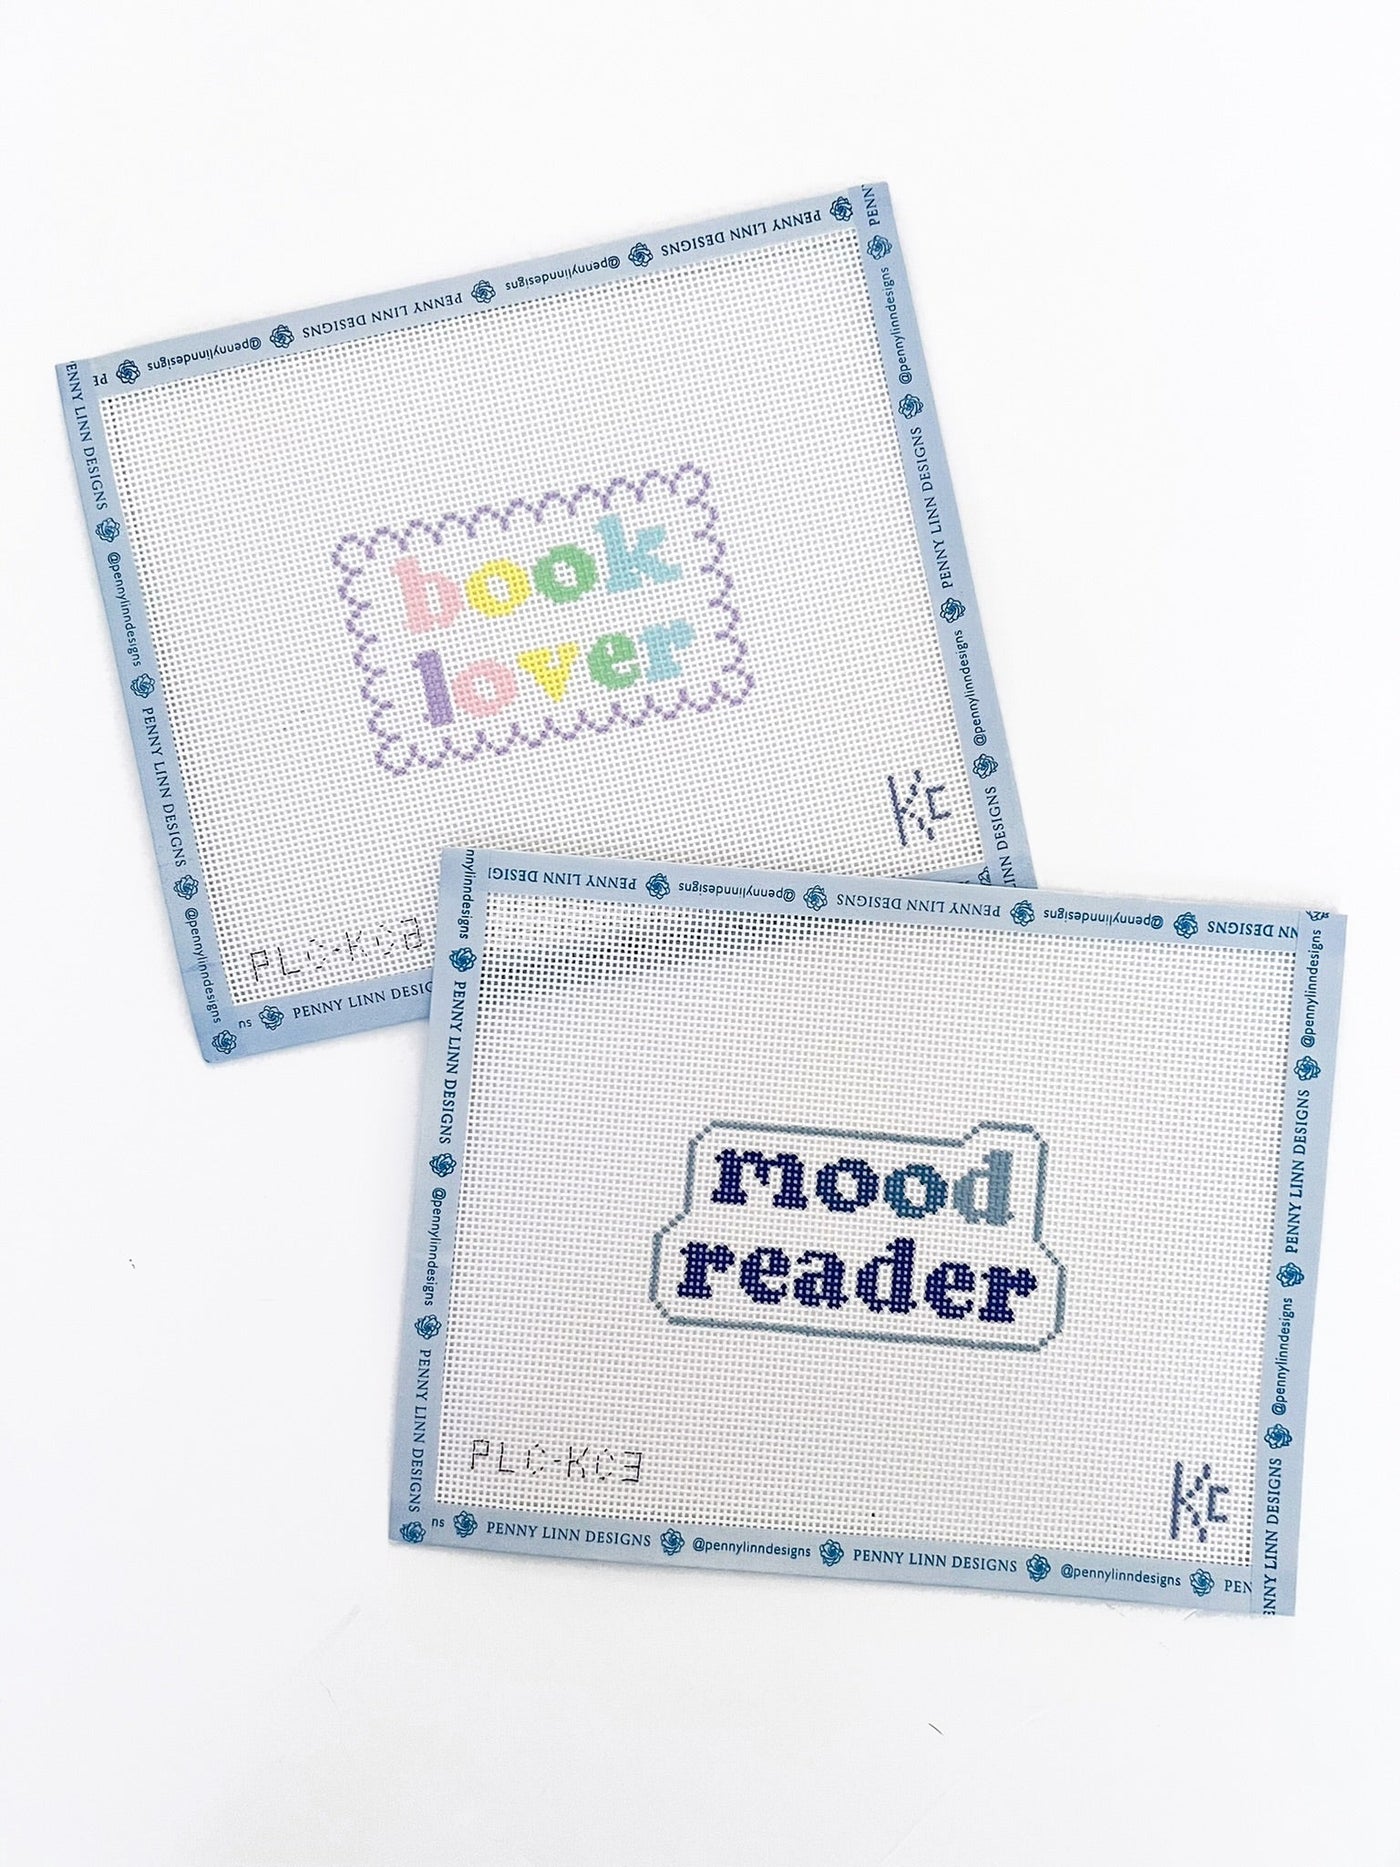 Book Lover - Penny Linn Designs - Kyra Cotter Designs